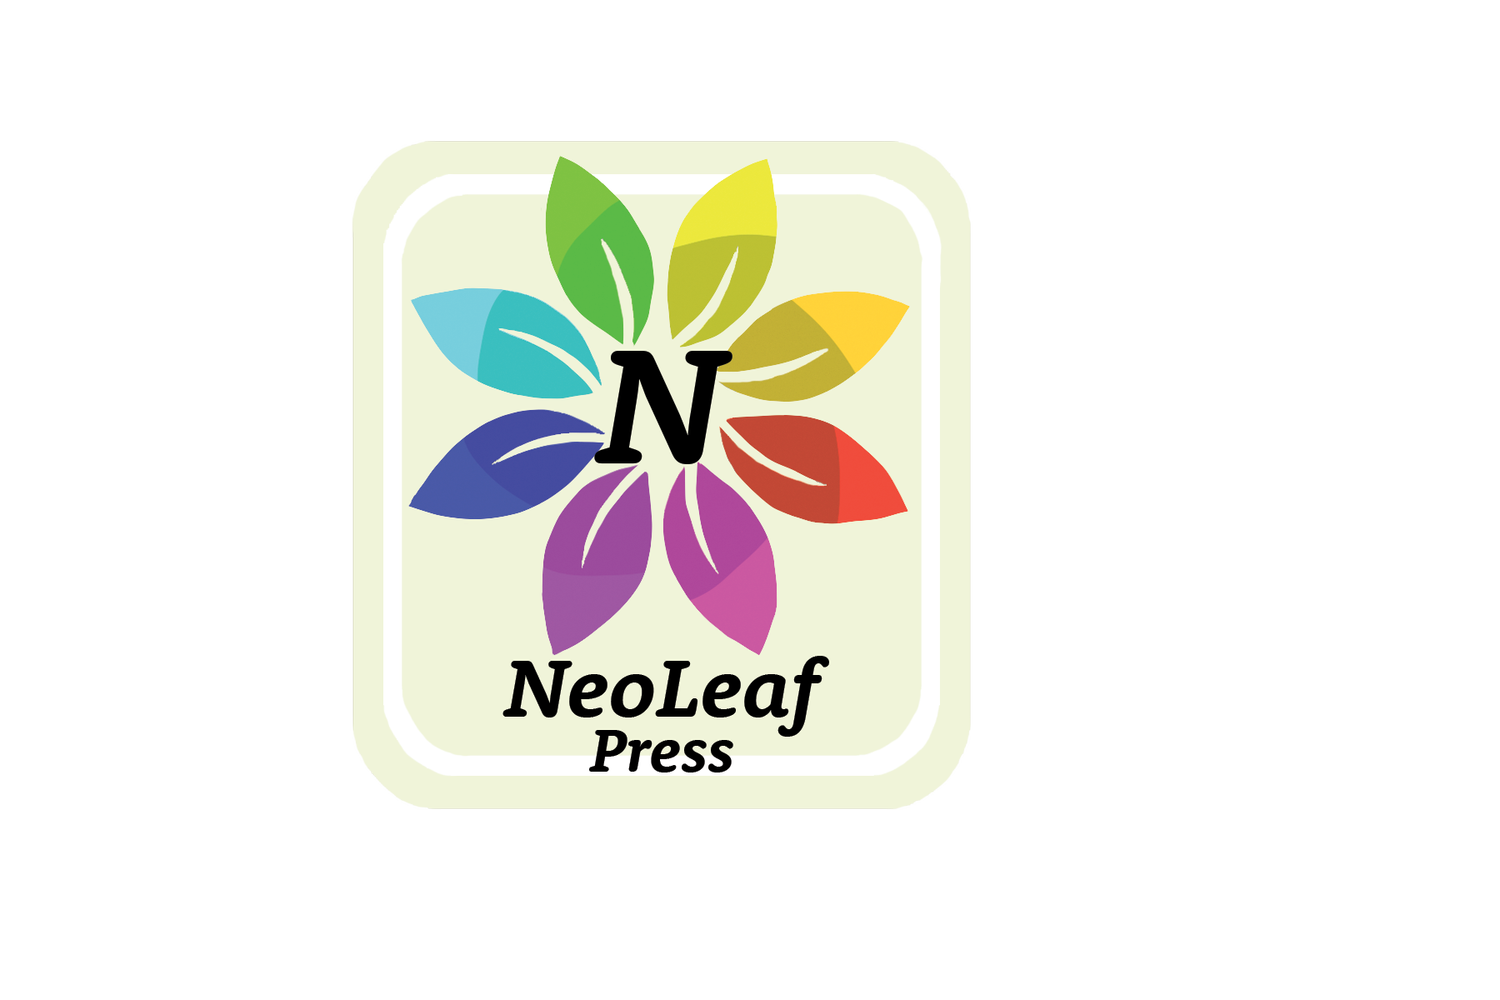 NeoLeaf Press